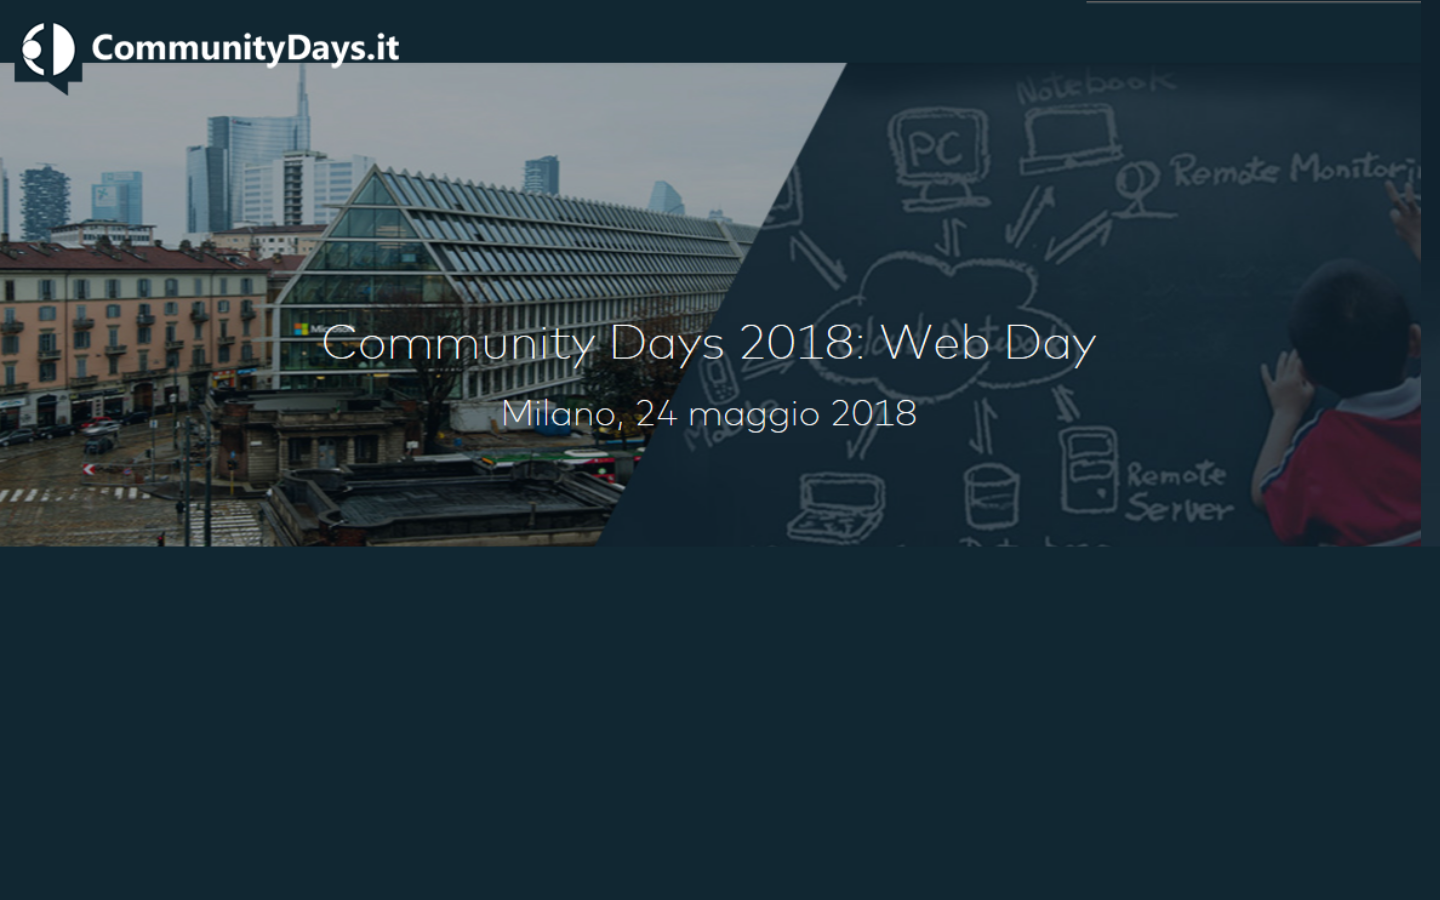 Tornano i Community Days 2018: Web Day il 24 maggio a Milano